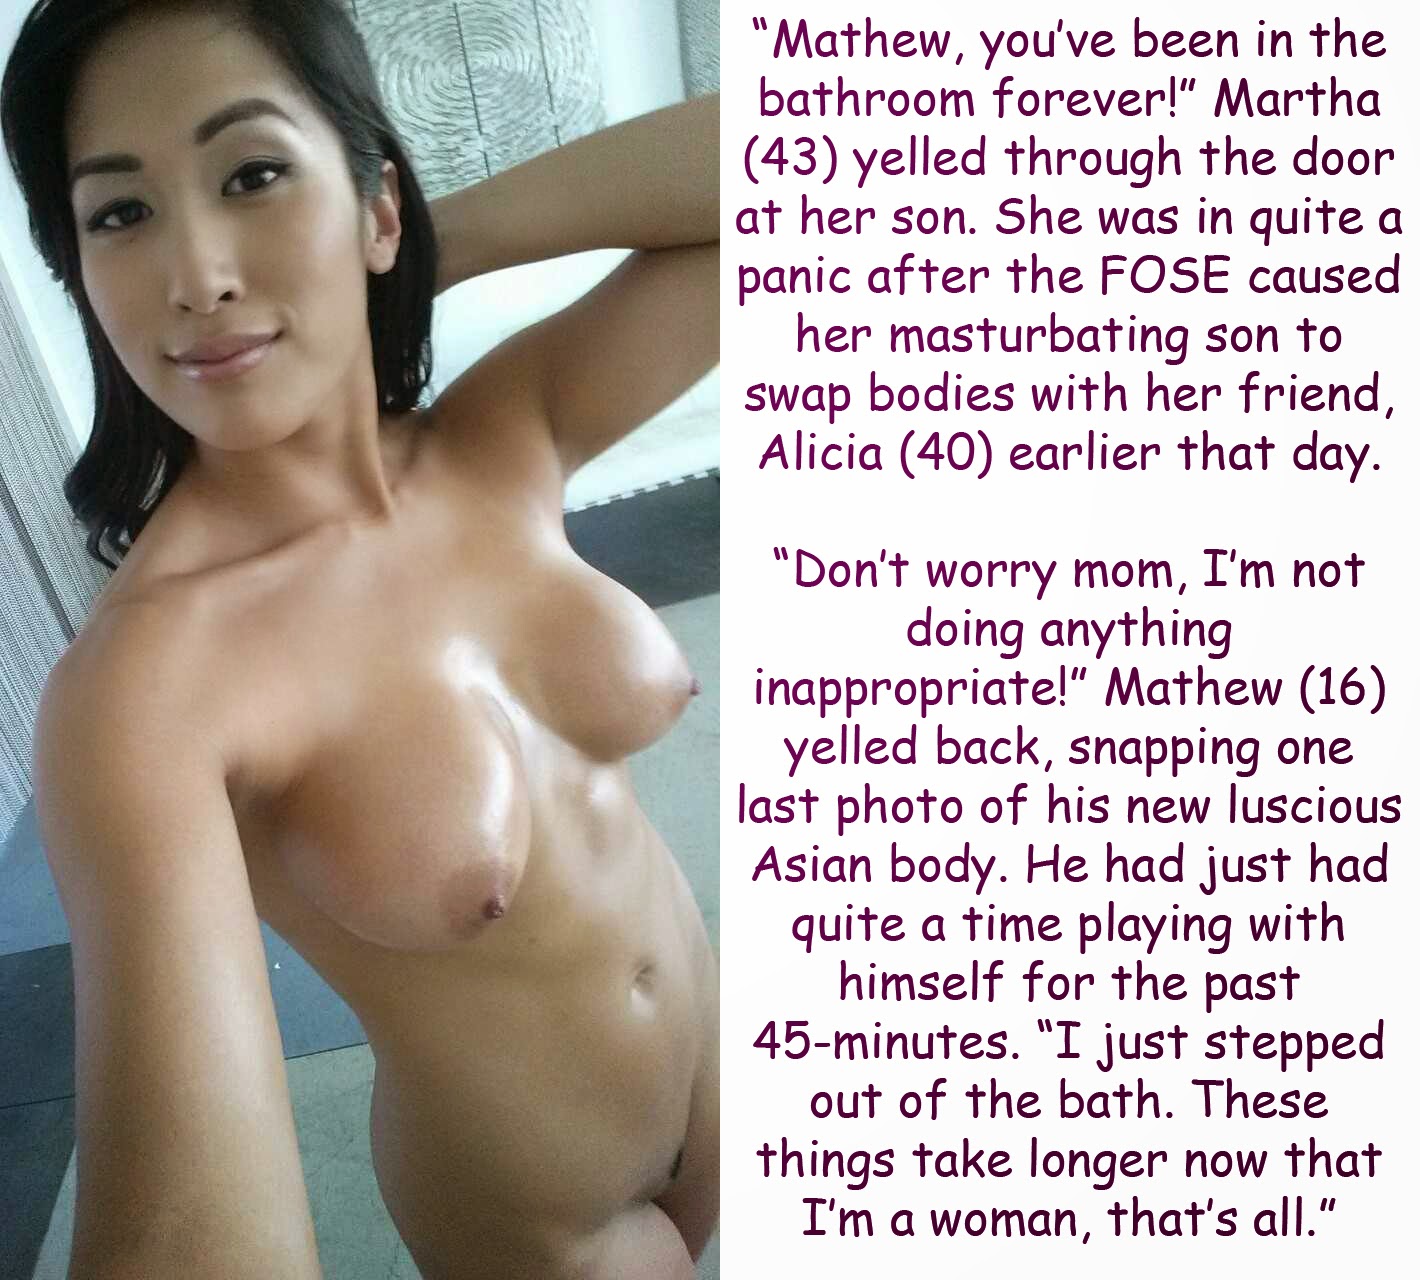 Asian body swap porn â¤ï¸ Best adult photos at onlynaked.pics